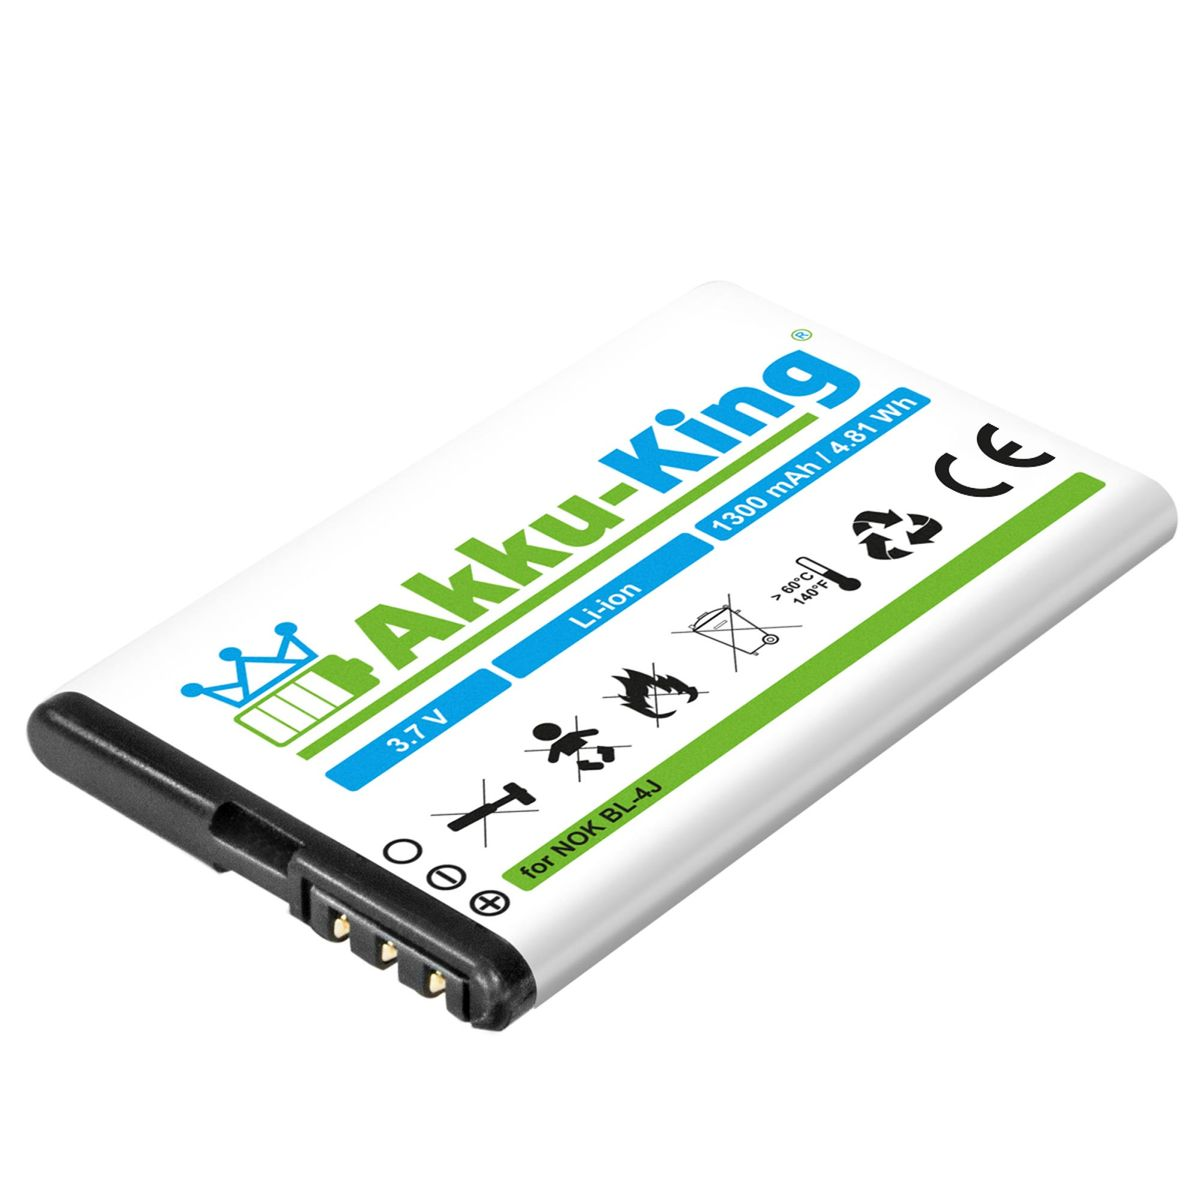 AKKU-KING Akku kompatibel 1200mAh PX-2759-675 Volt, NavGear Li-Ion Geräte-Akku, mit 3.7